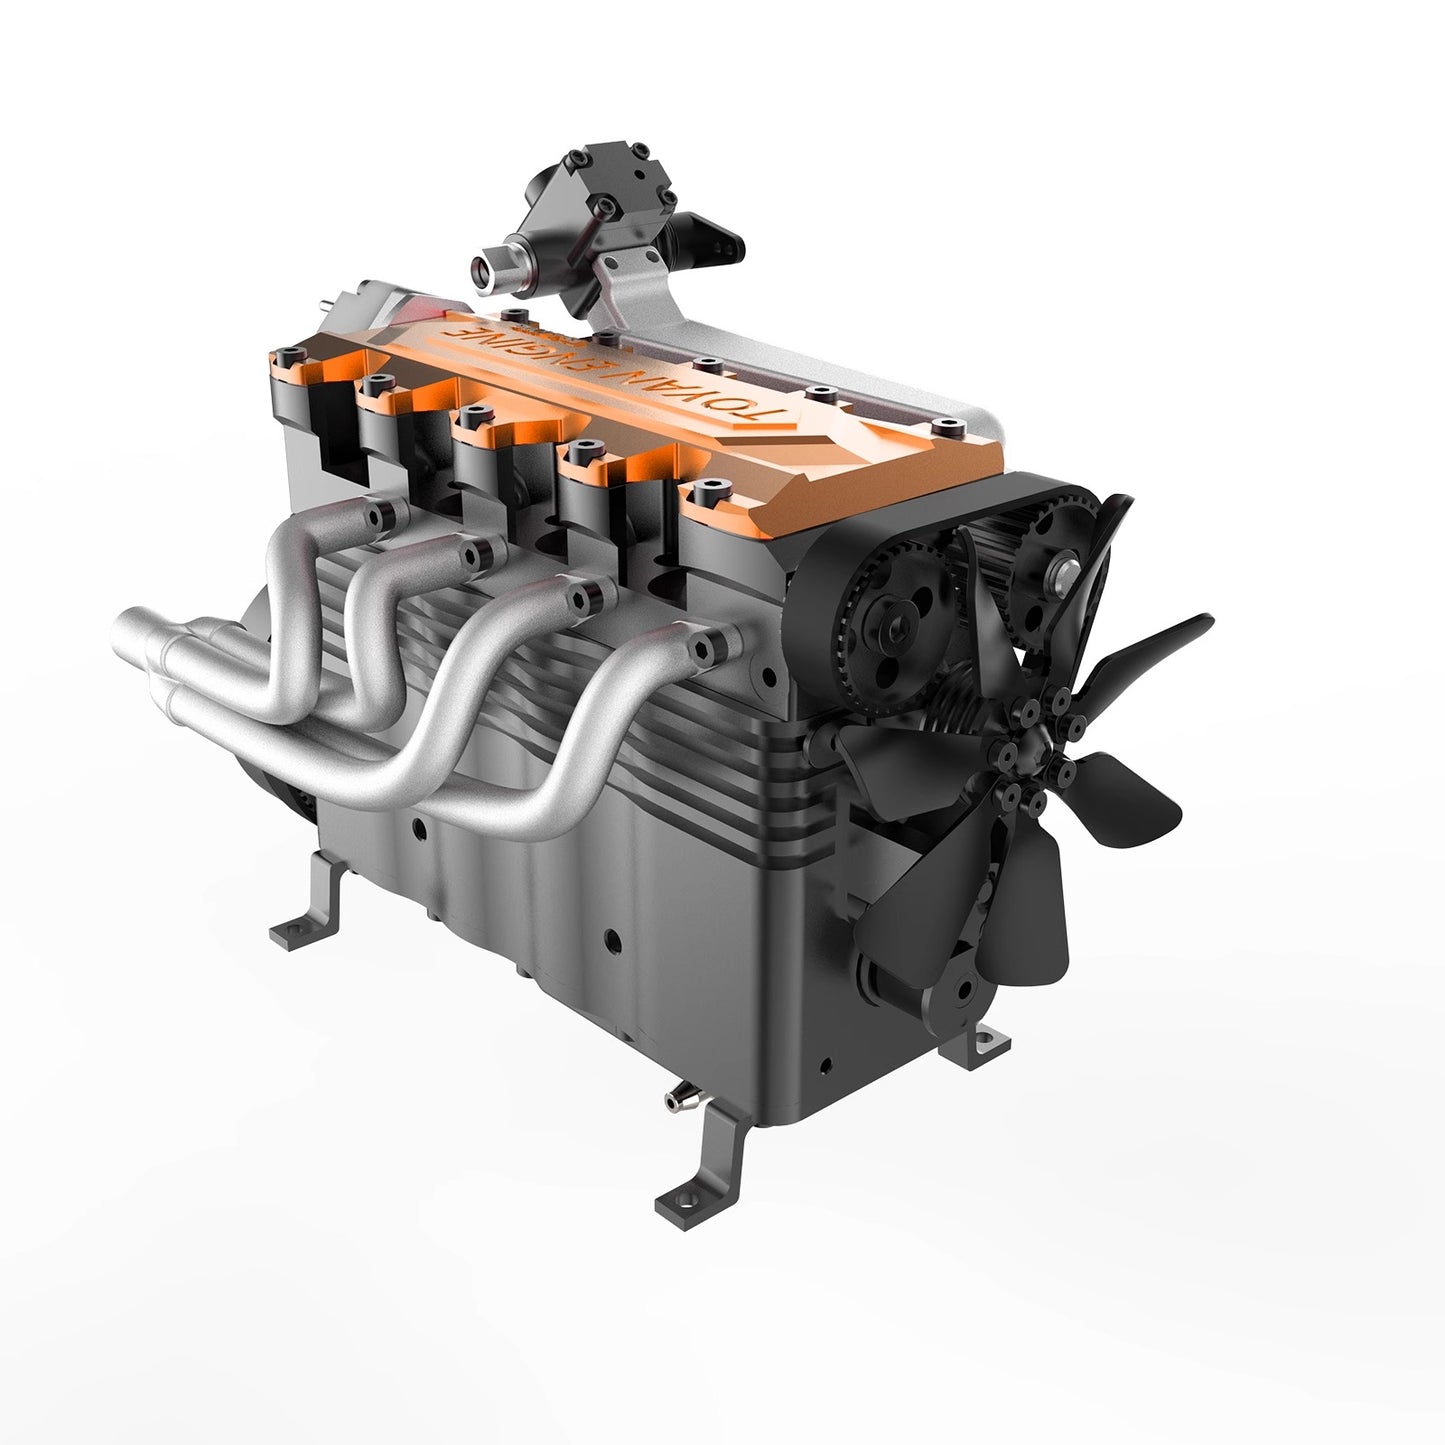 TOYAN FS-L400BGC Engine Model Kit: 14cc Inline 4-Cylinder Gas Engine for Model Vehicles